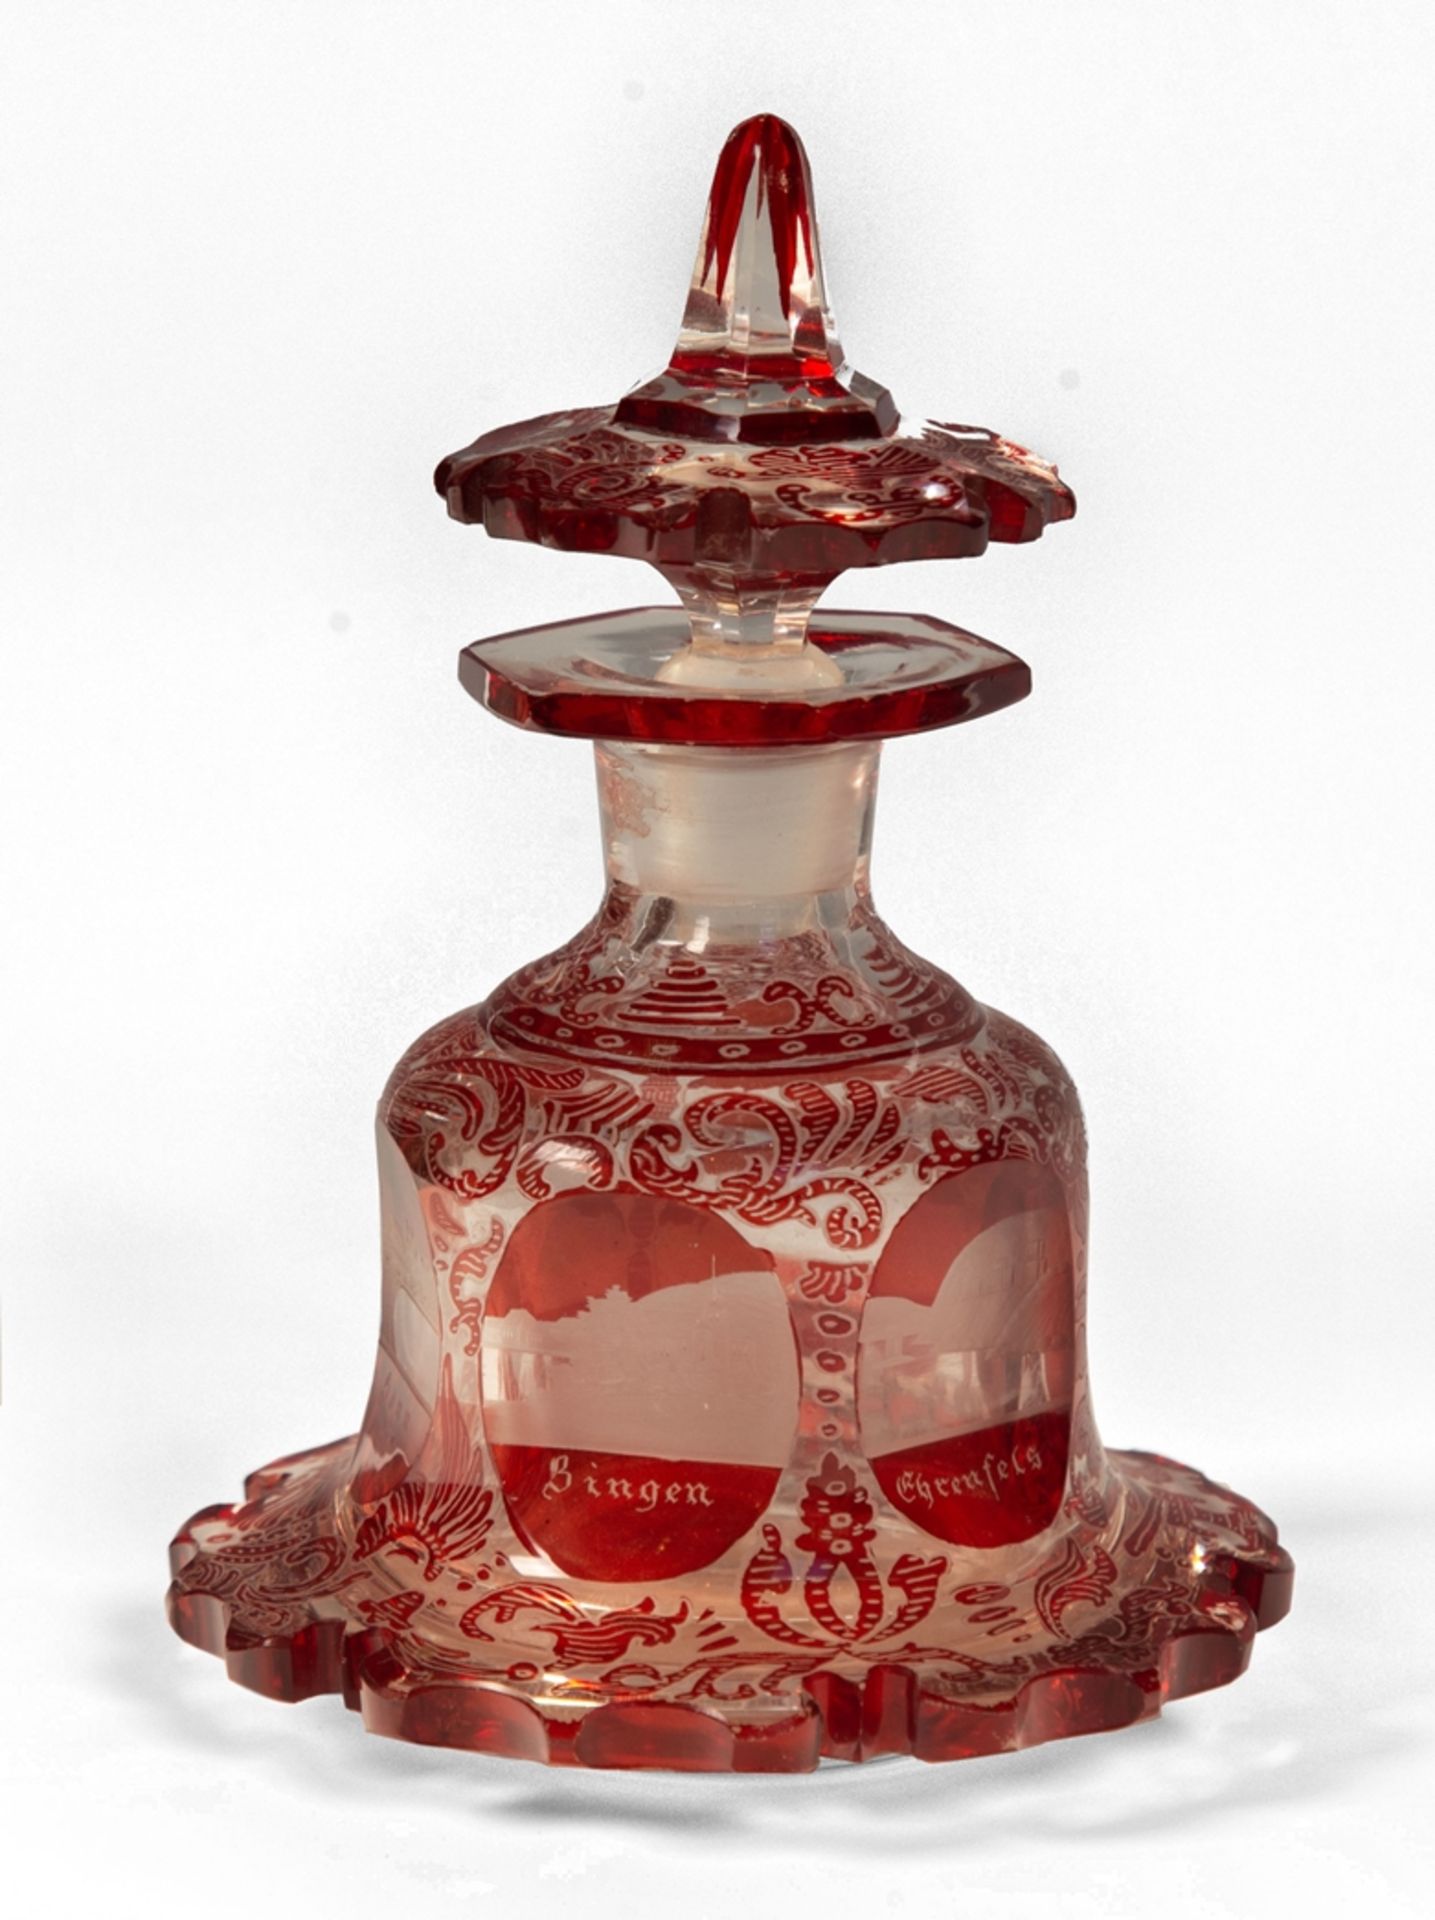 Flacon mit Stöpsel. Rot lasiertes farbloses Glas. Geschnittener Dekor mit Ansichten von Kurorten am